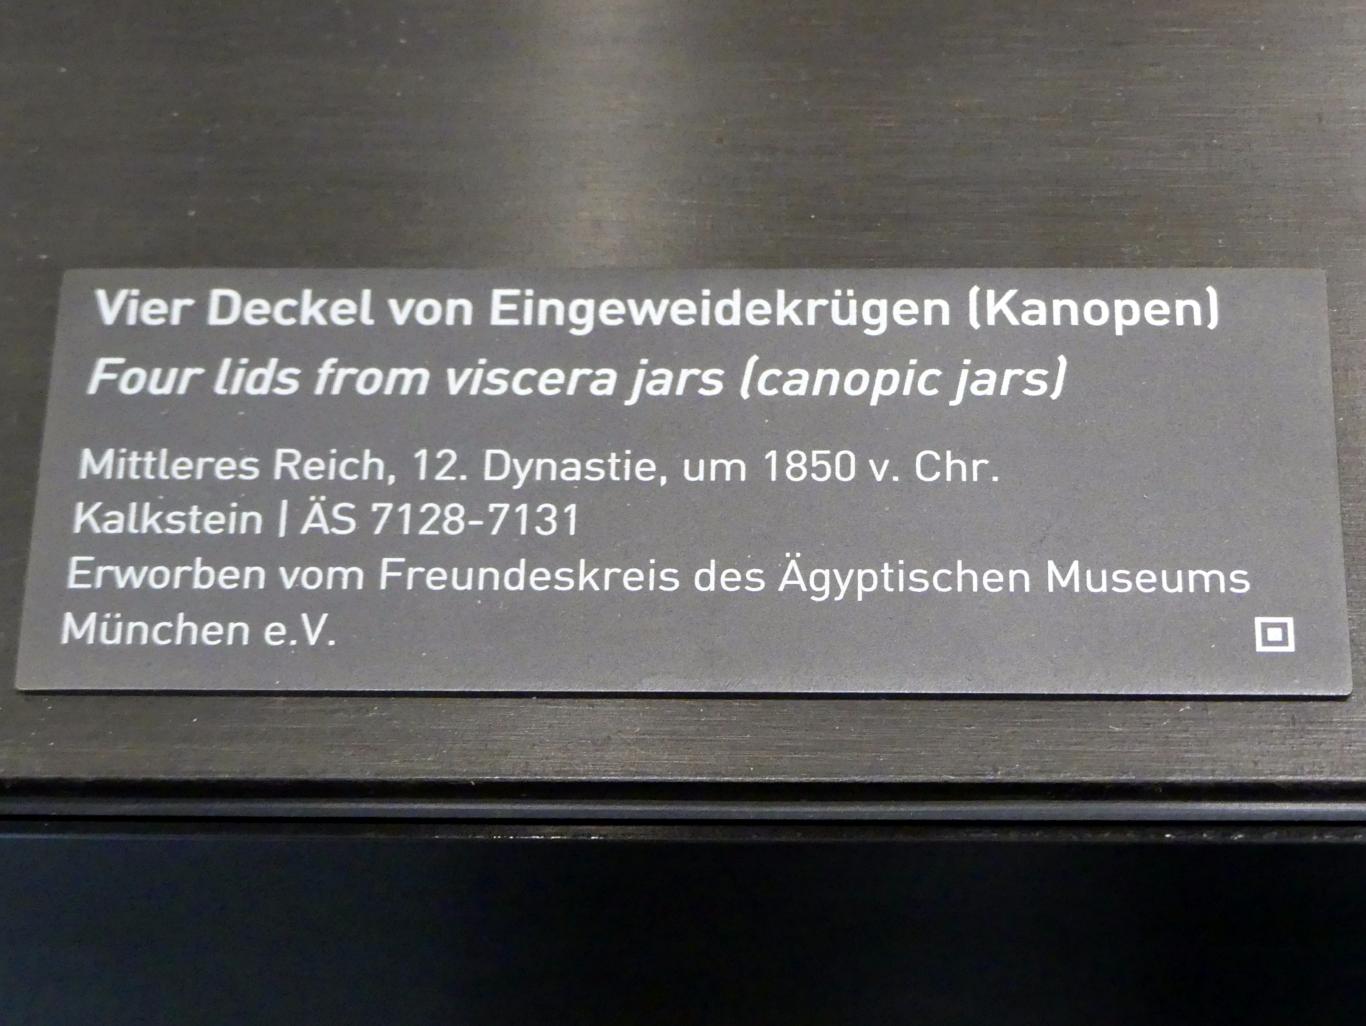 Vier Deckel von Eingeweidekrügen (Kanopen), 12. Dynastie, 1678 - 1634 v. Chr., 1850 v. Chr., Bild 5/5